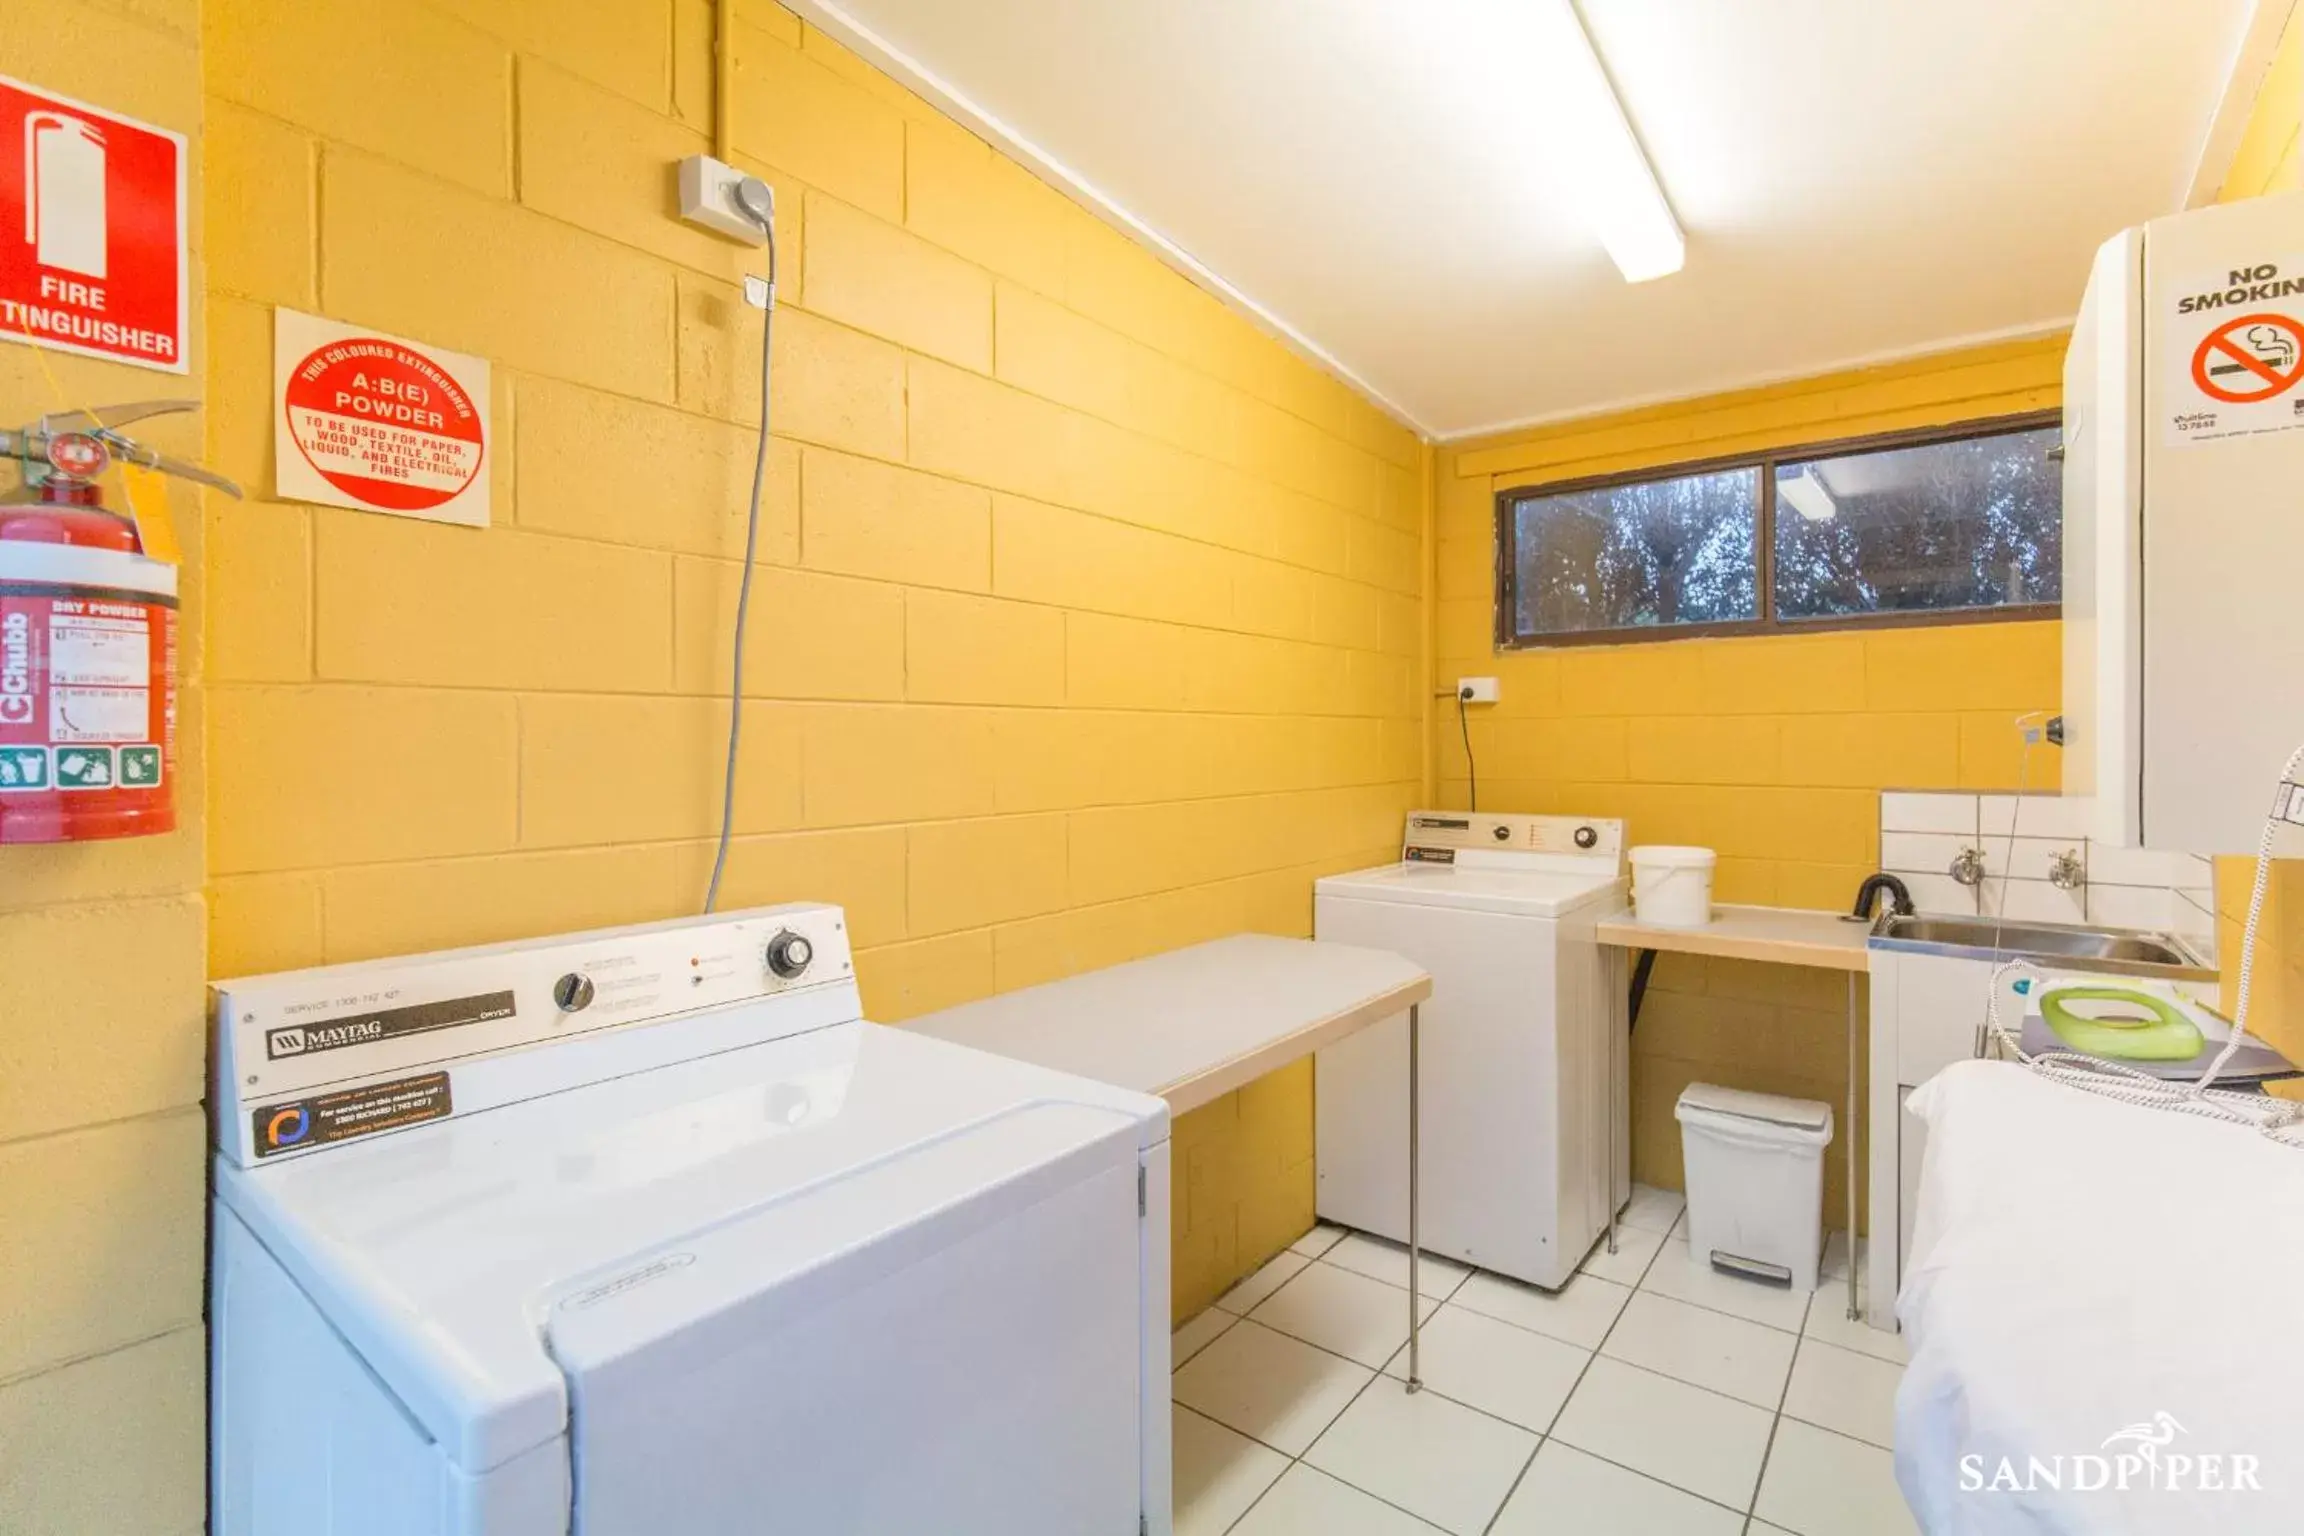 Area and facilities, Bathroom in Sandpiper Motel Apollo Bay